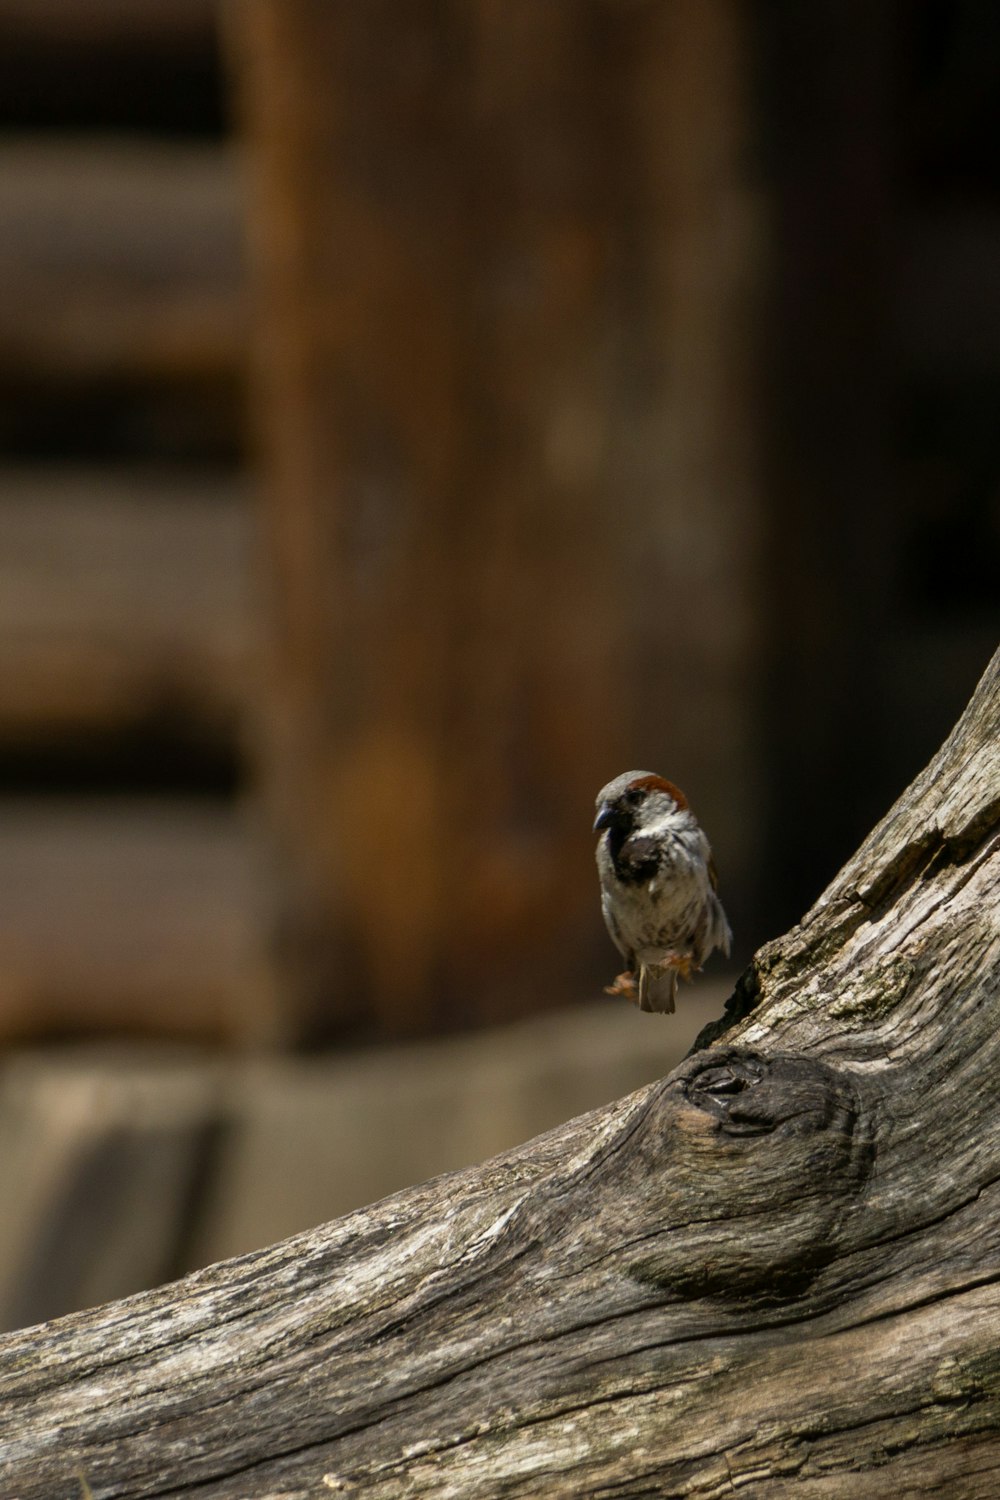 나뭇가지 위에 앉은 작은 새